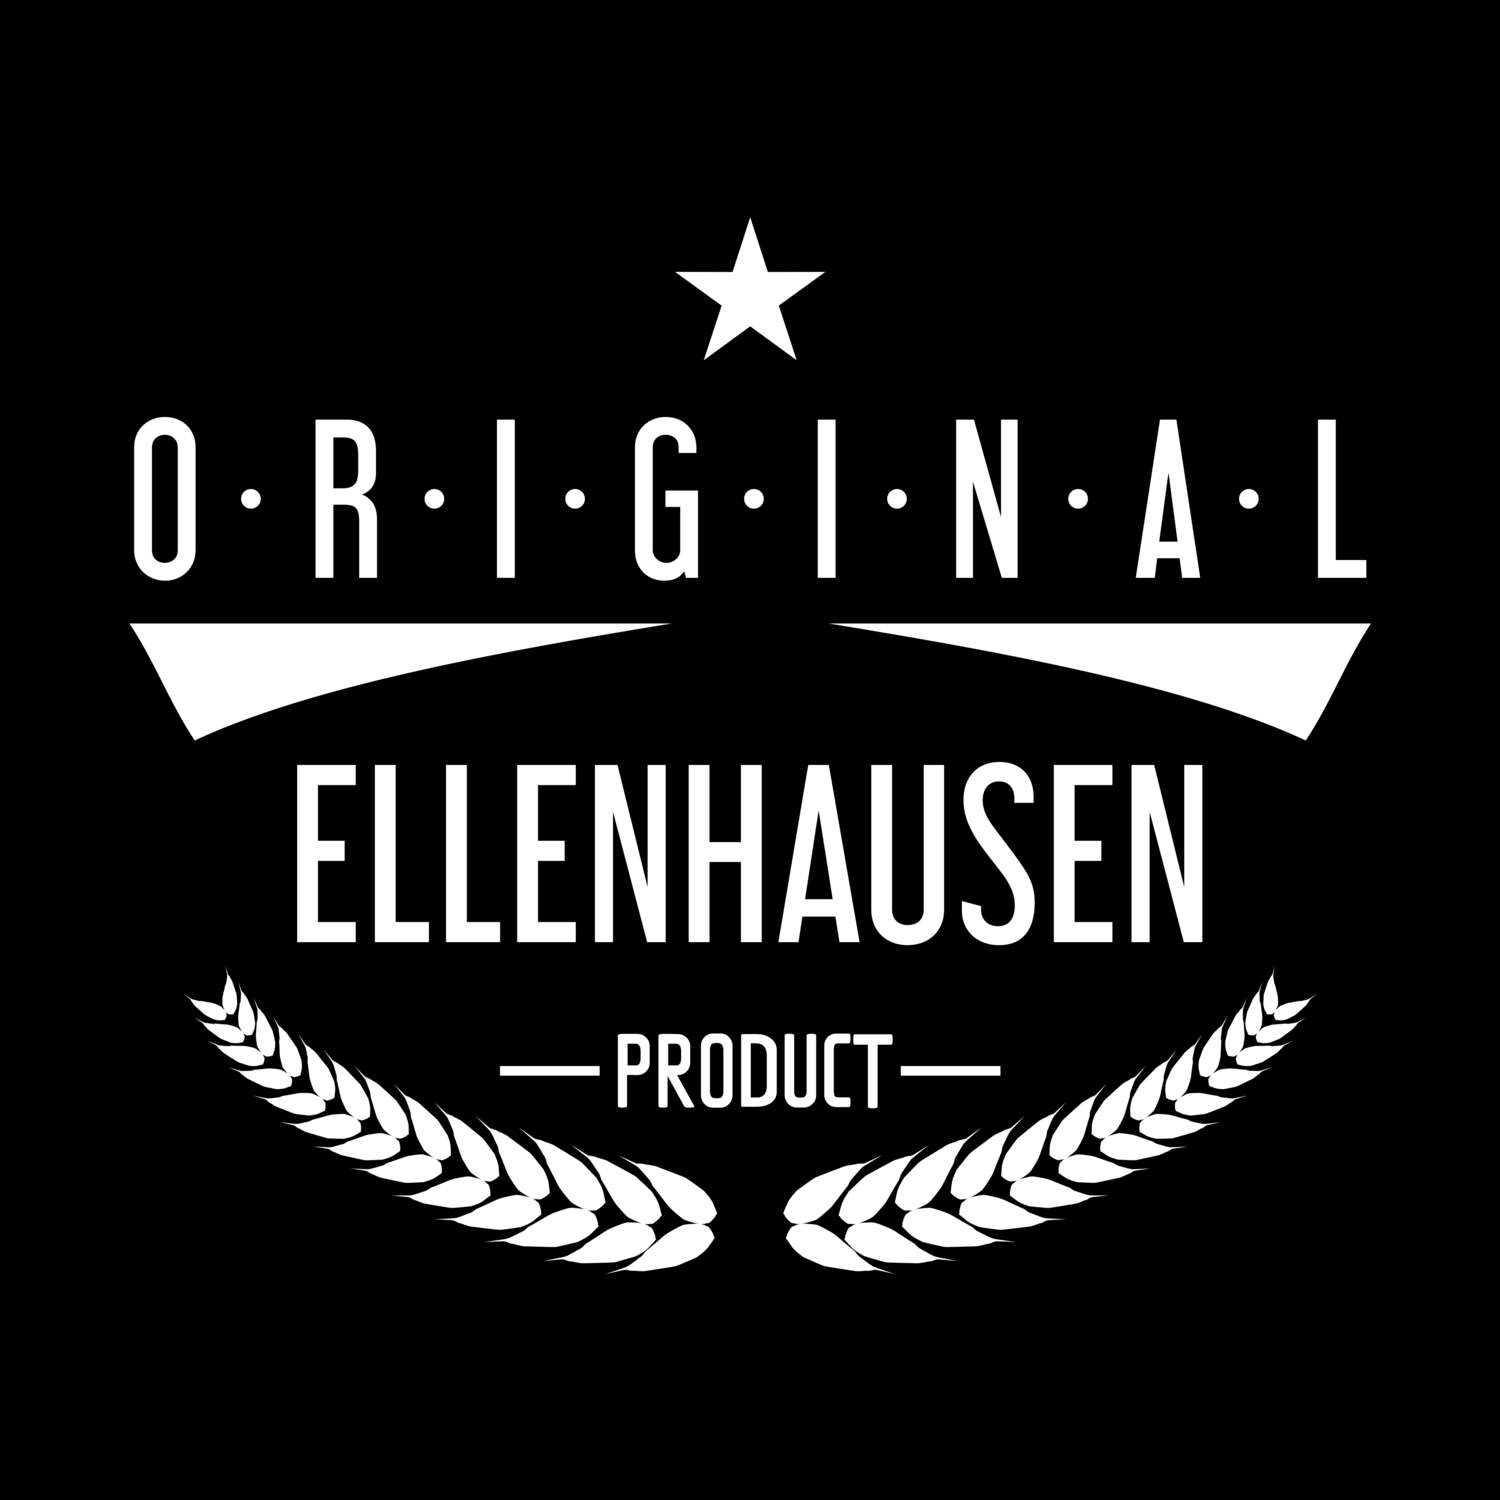 Ellenhausen T-Shirt »Original Product«